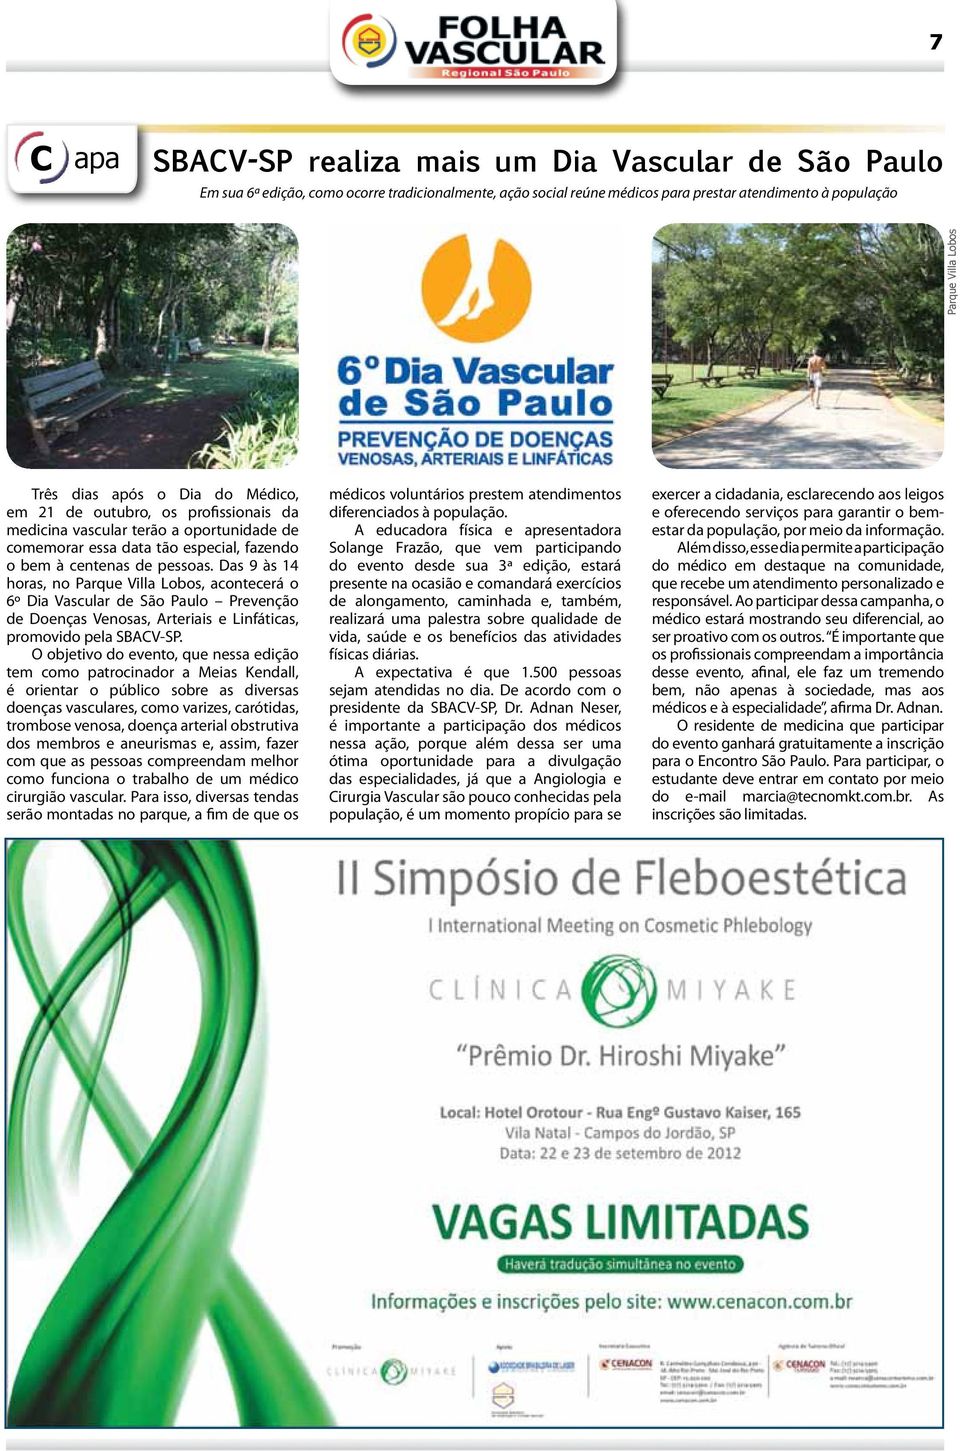 Das 9 às 14 horas, no Parque Villa Lobos, acontecerá o 6º Dia Vascular de São Paulo Prevenção de Doenças Venosas, Arteriais e Linfáticas, promovido pela SBACV-SP.